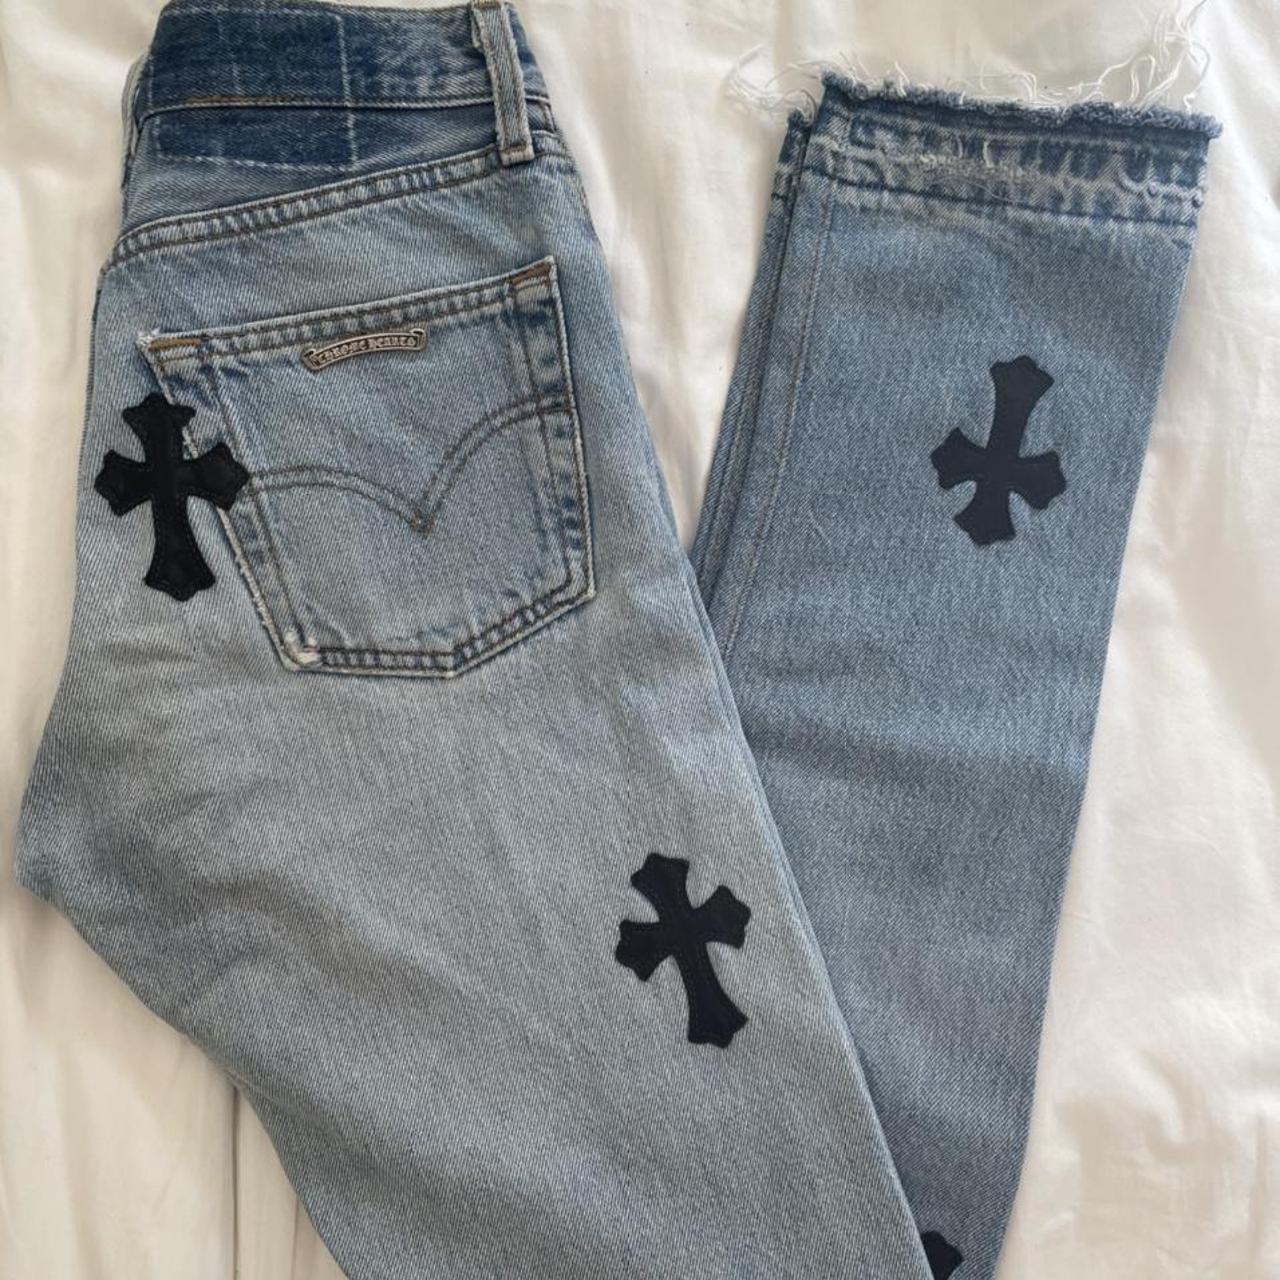 Authentic Chrome Hearts X Levis jeans These jeans... - Depop